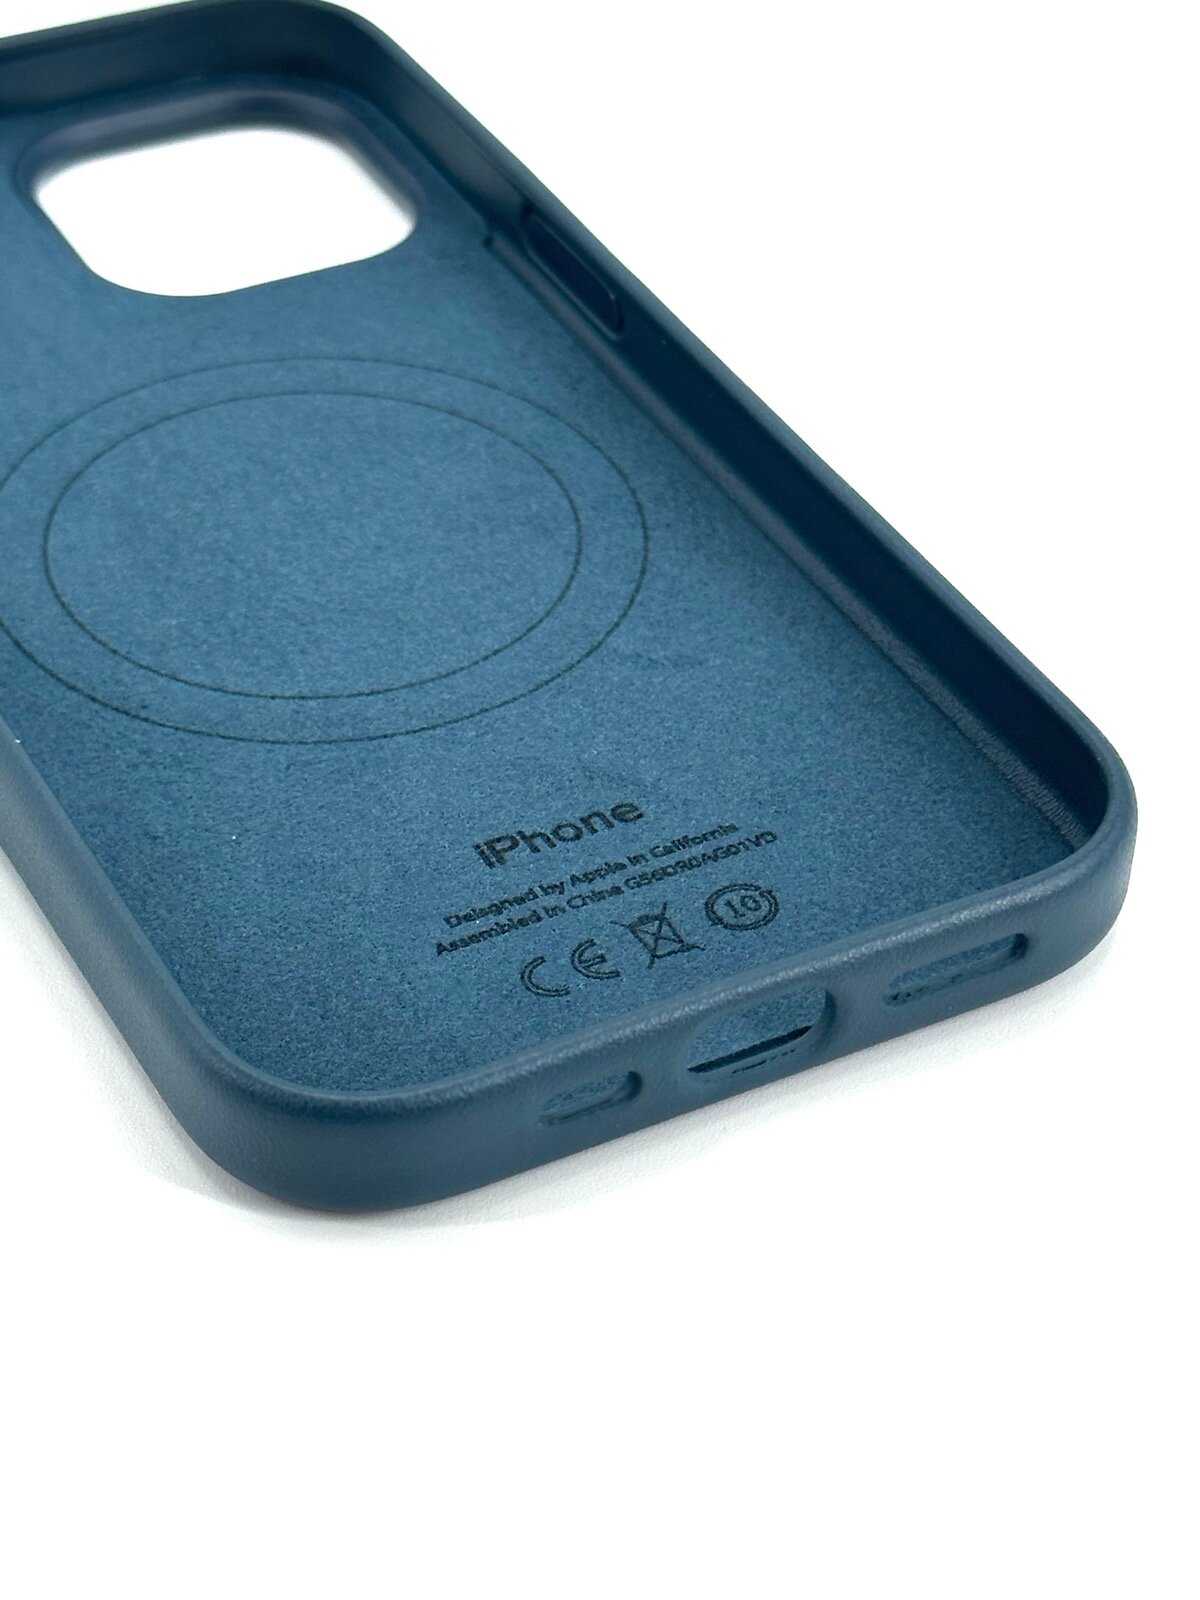 Кожаный чехол для iPhone 14 с Magsafe и анимацией синий (Baltic blue)